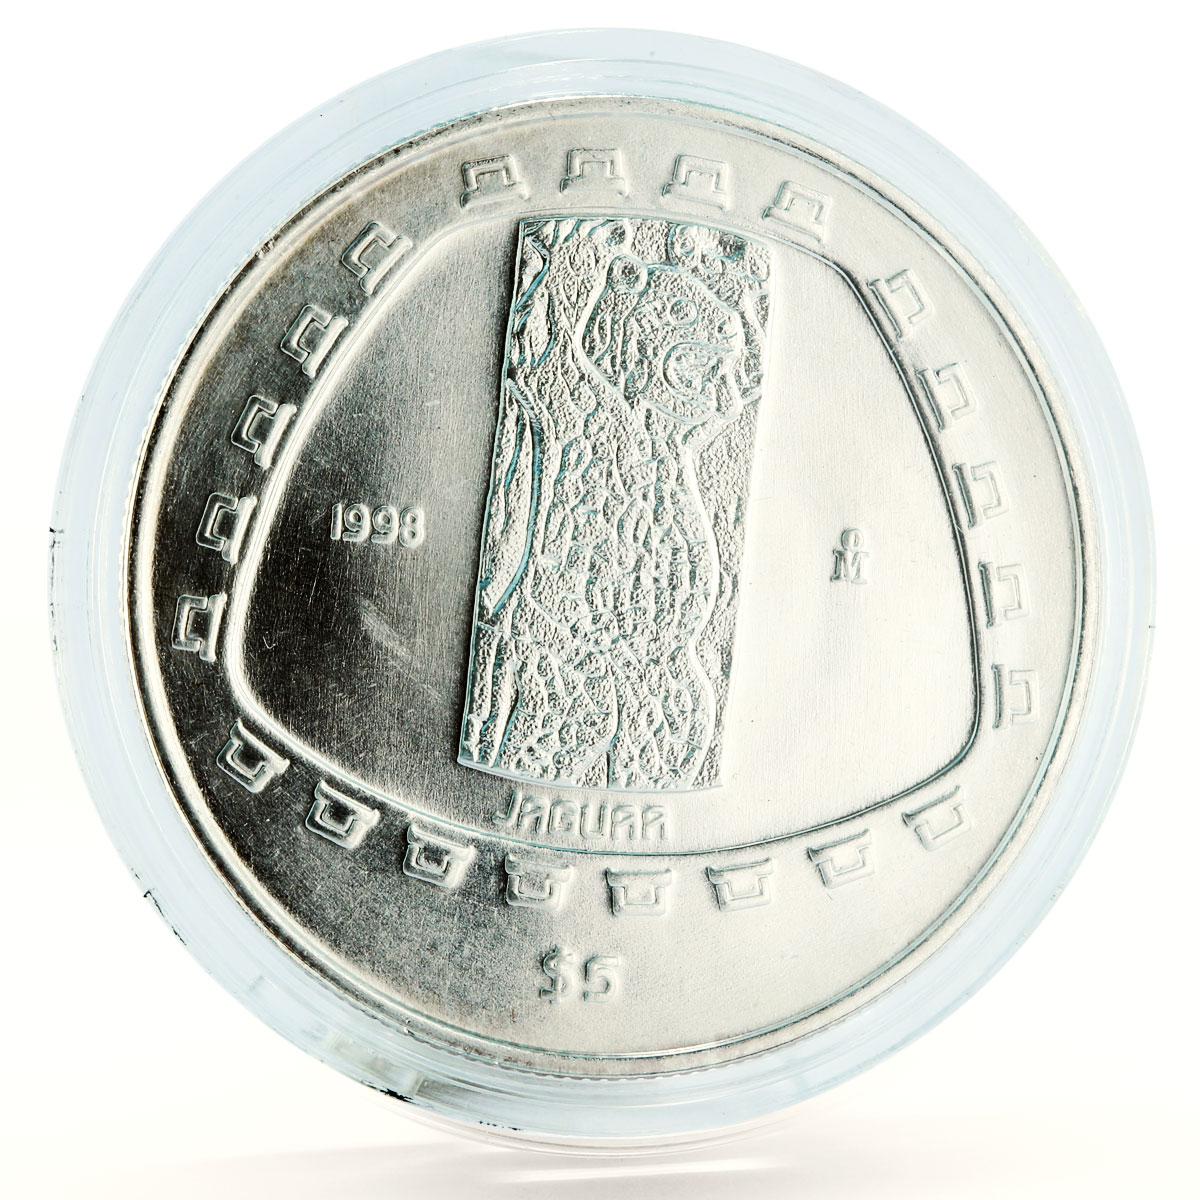 Mexico 5 pesos Precolombina series Jaguar Sculpture silver coin 1998